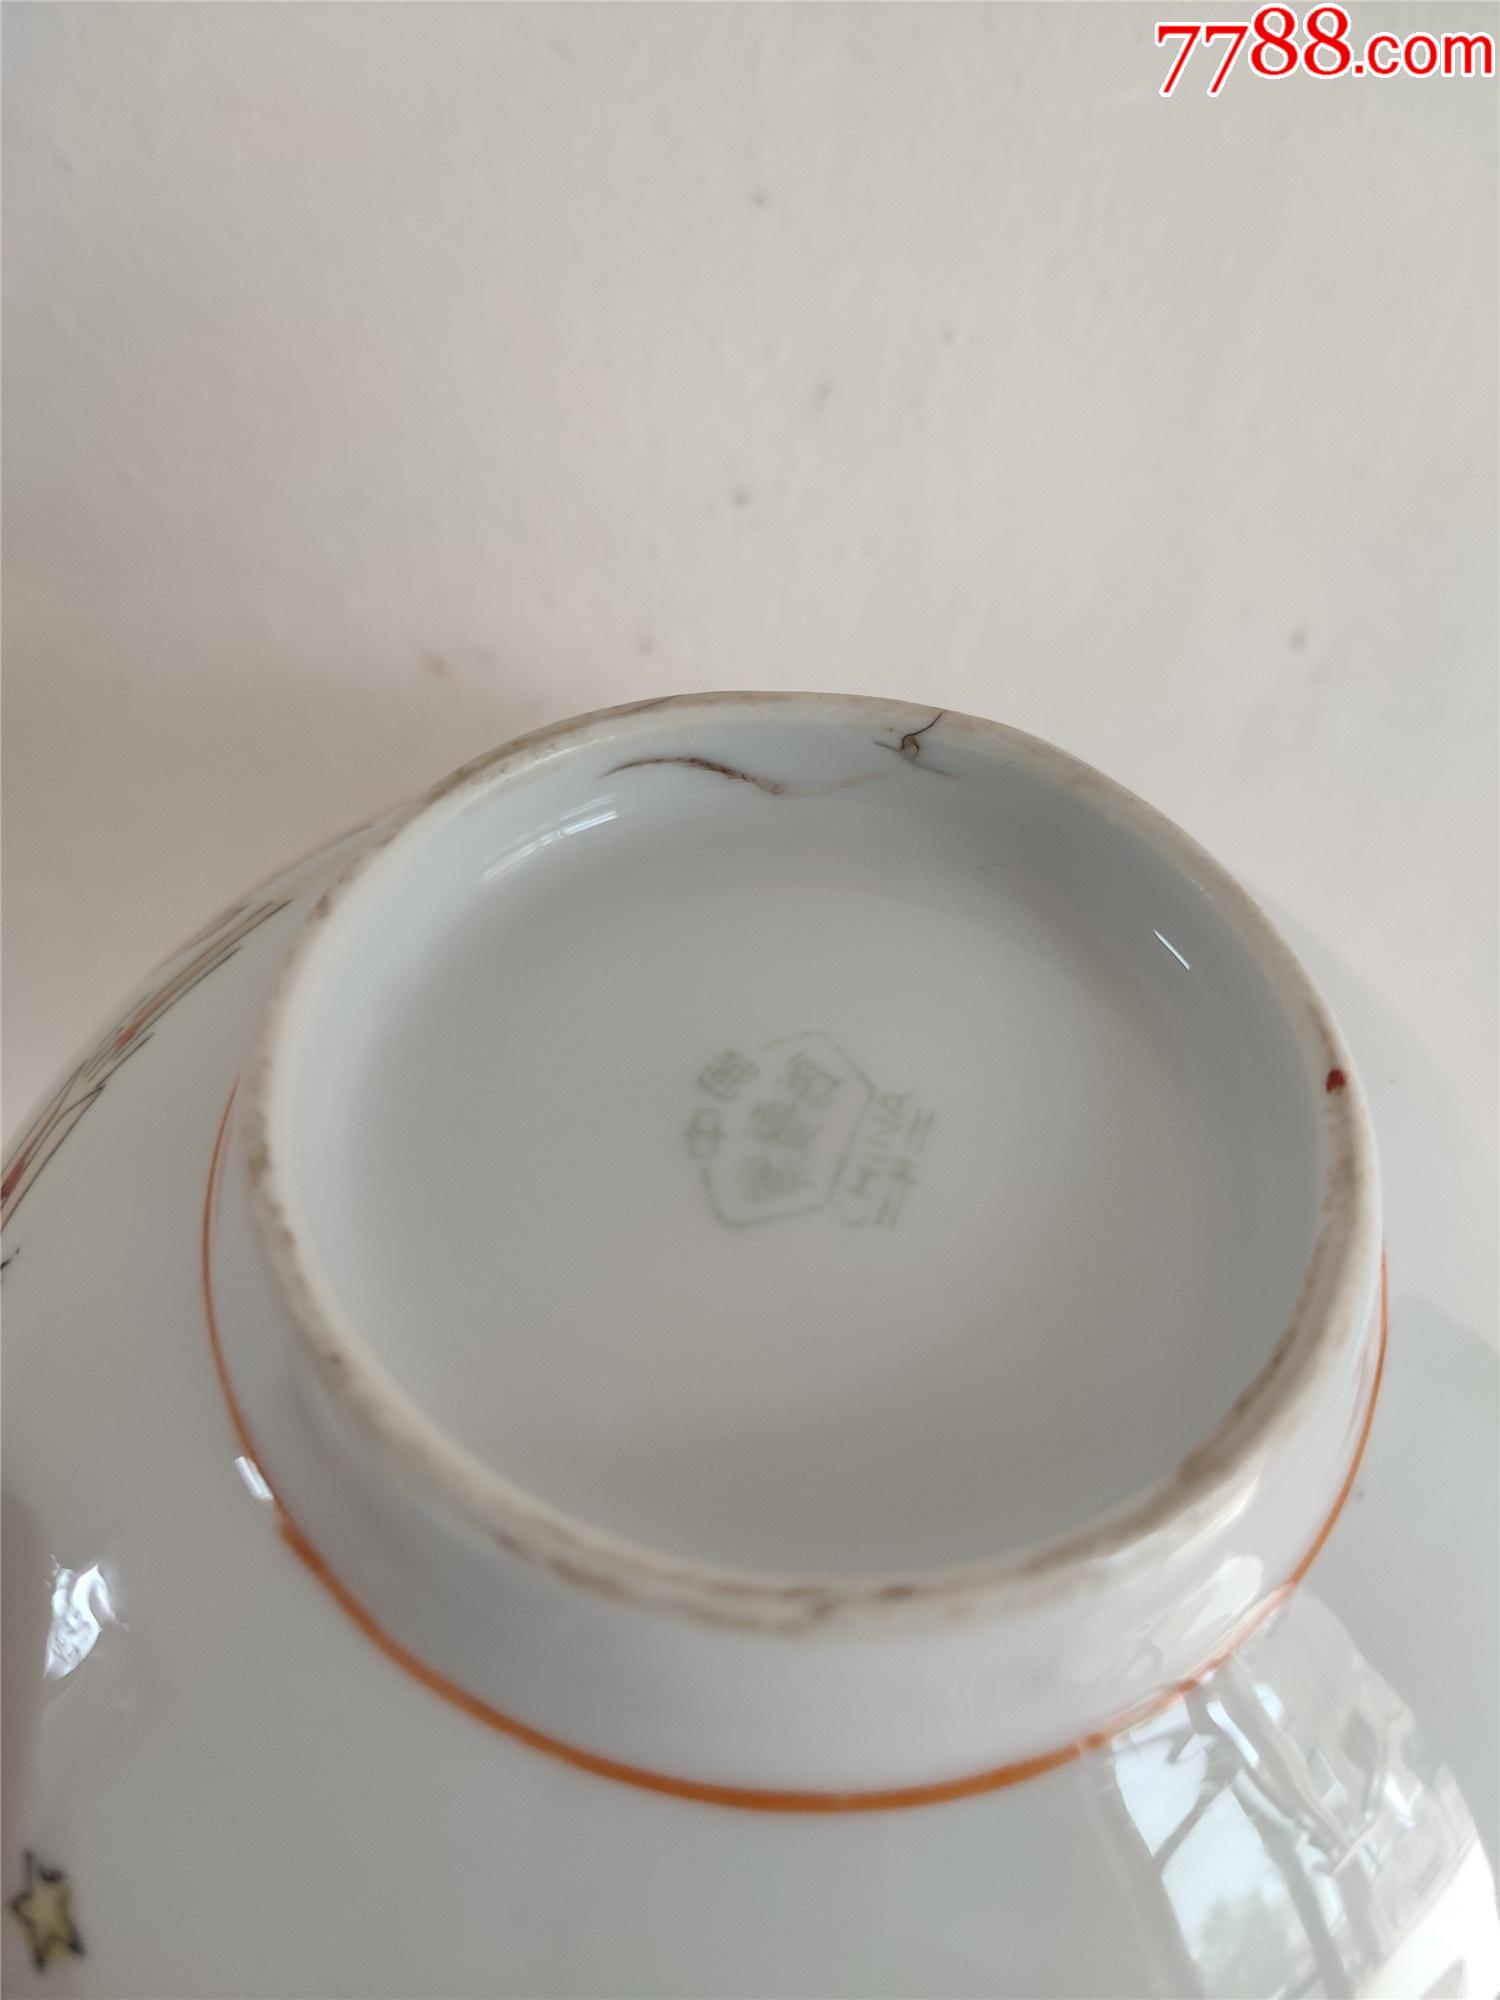 六七十年代的粉彩瓷器碗,口径16厘米,小磕如图所示,没